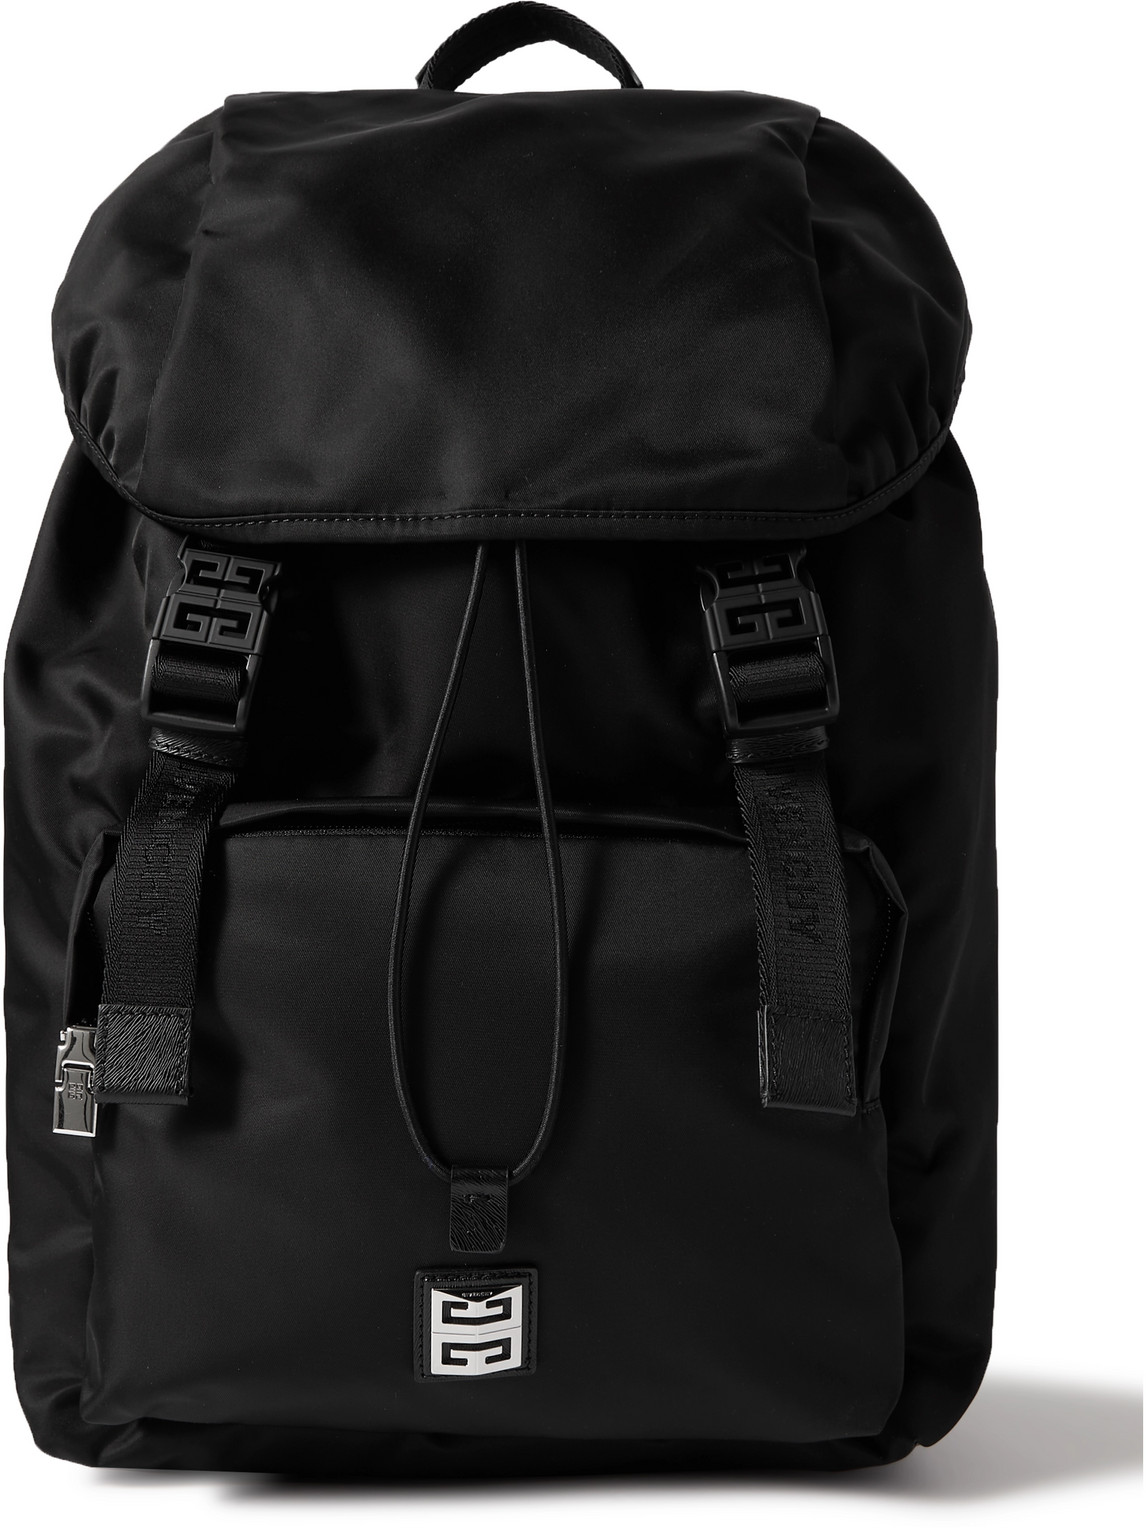 4G Light Leather-Trimmed Nylon Backpack